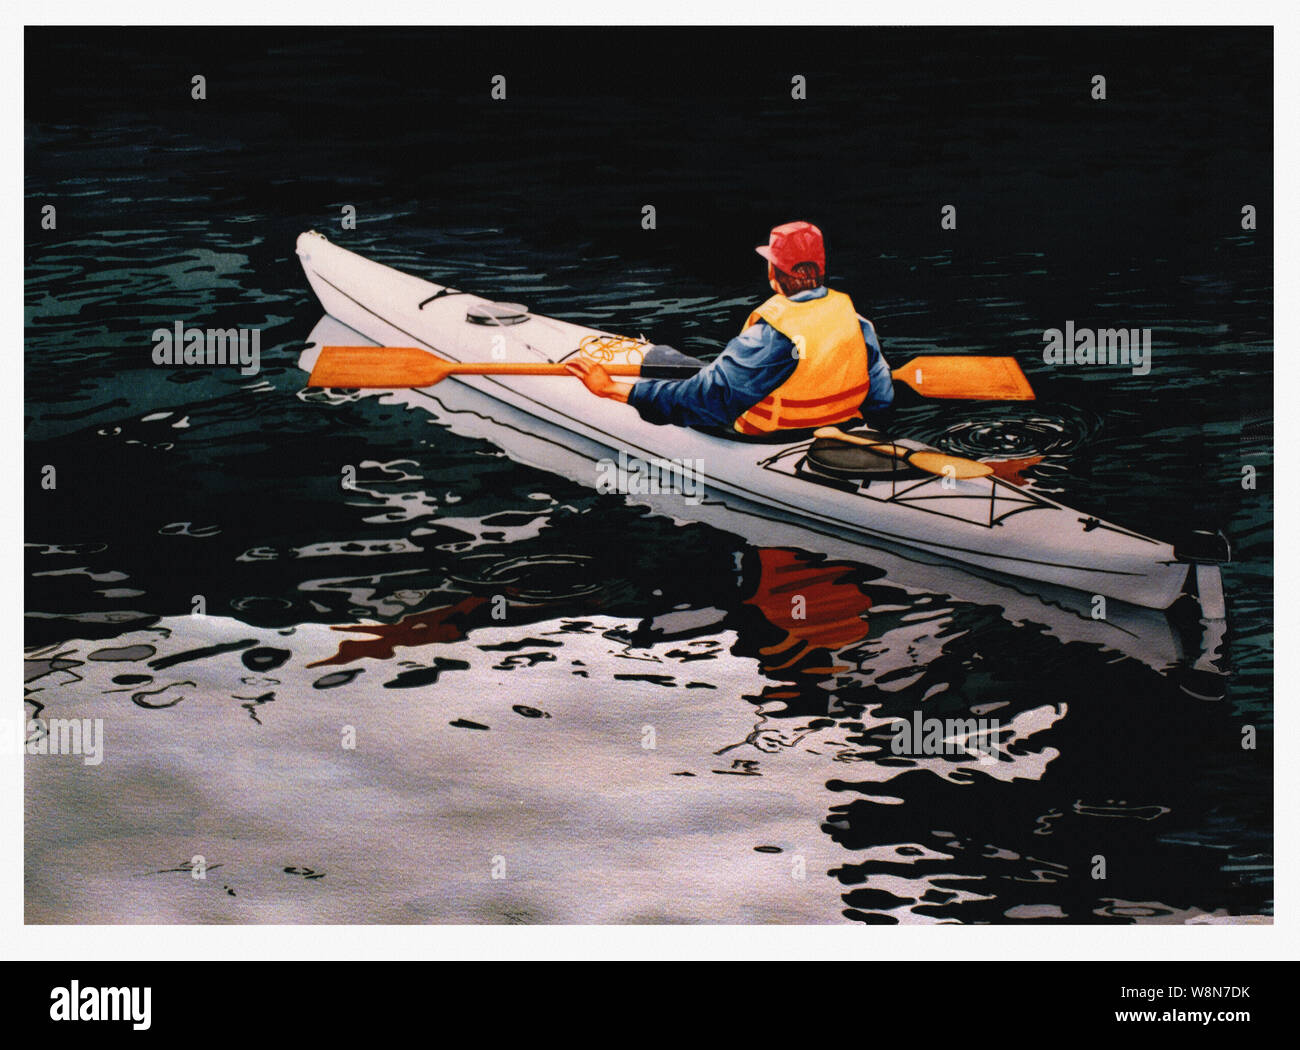 Kayakista con gorra roja jean chaqueta blanca palas de kayak en la oscuridad dejando remolinos de piscinas de azul en su despertar Foto de stock